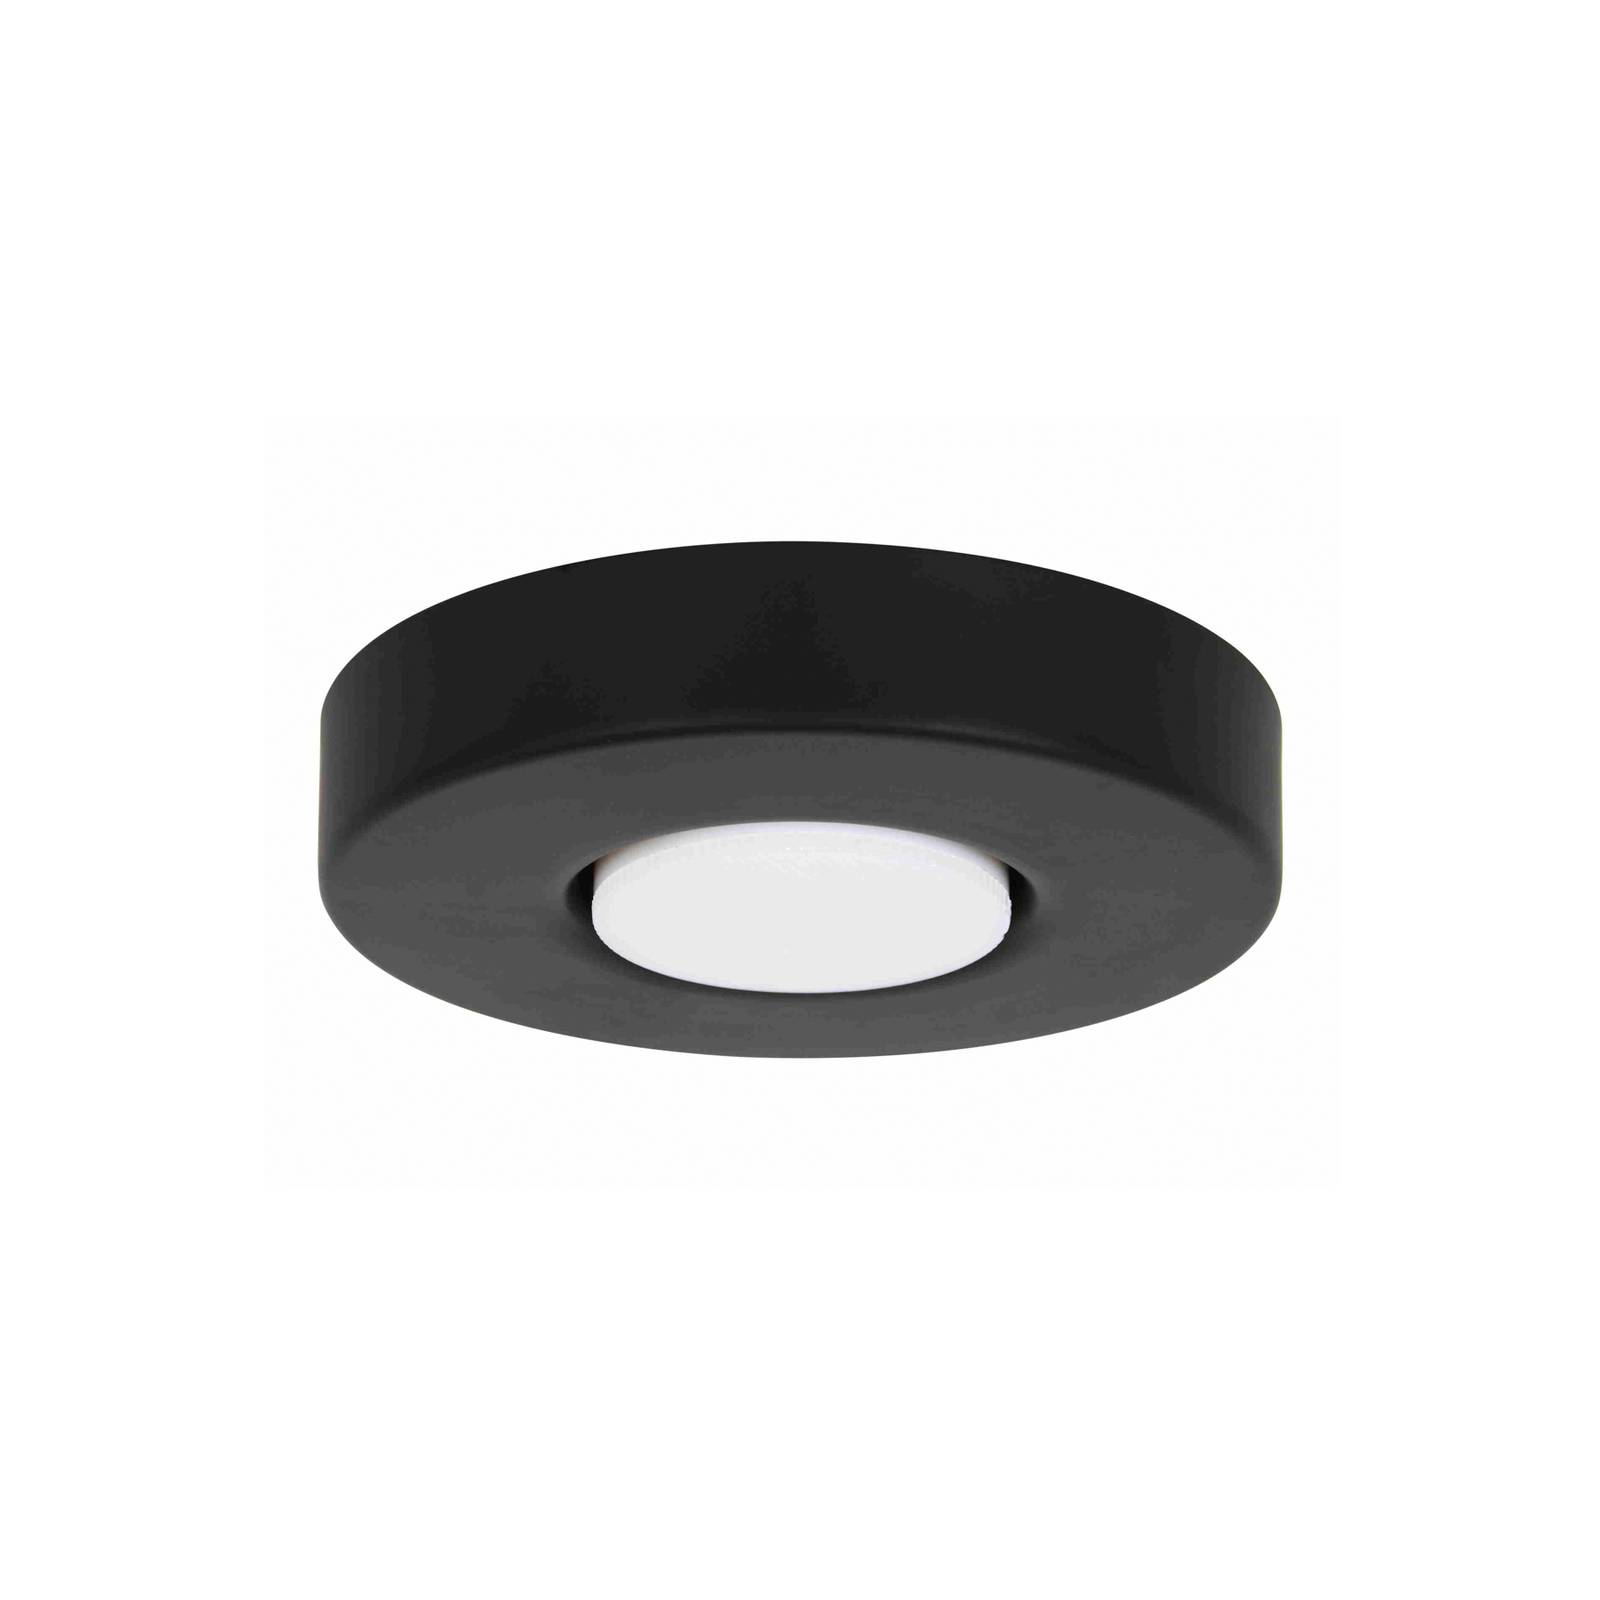 Beacon Akmani Leuchte für Deckenventilatoren, schwarz, GX53 von Beacon Lighting